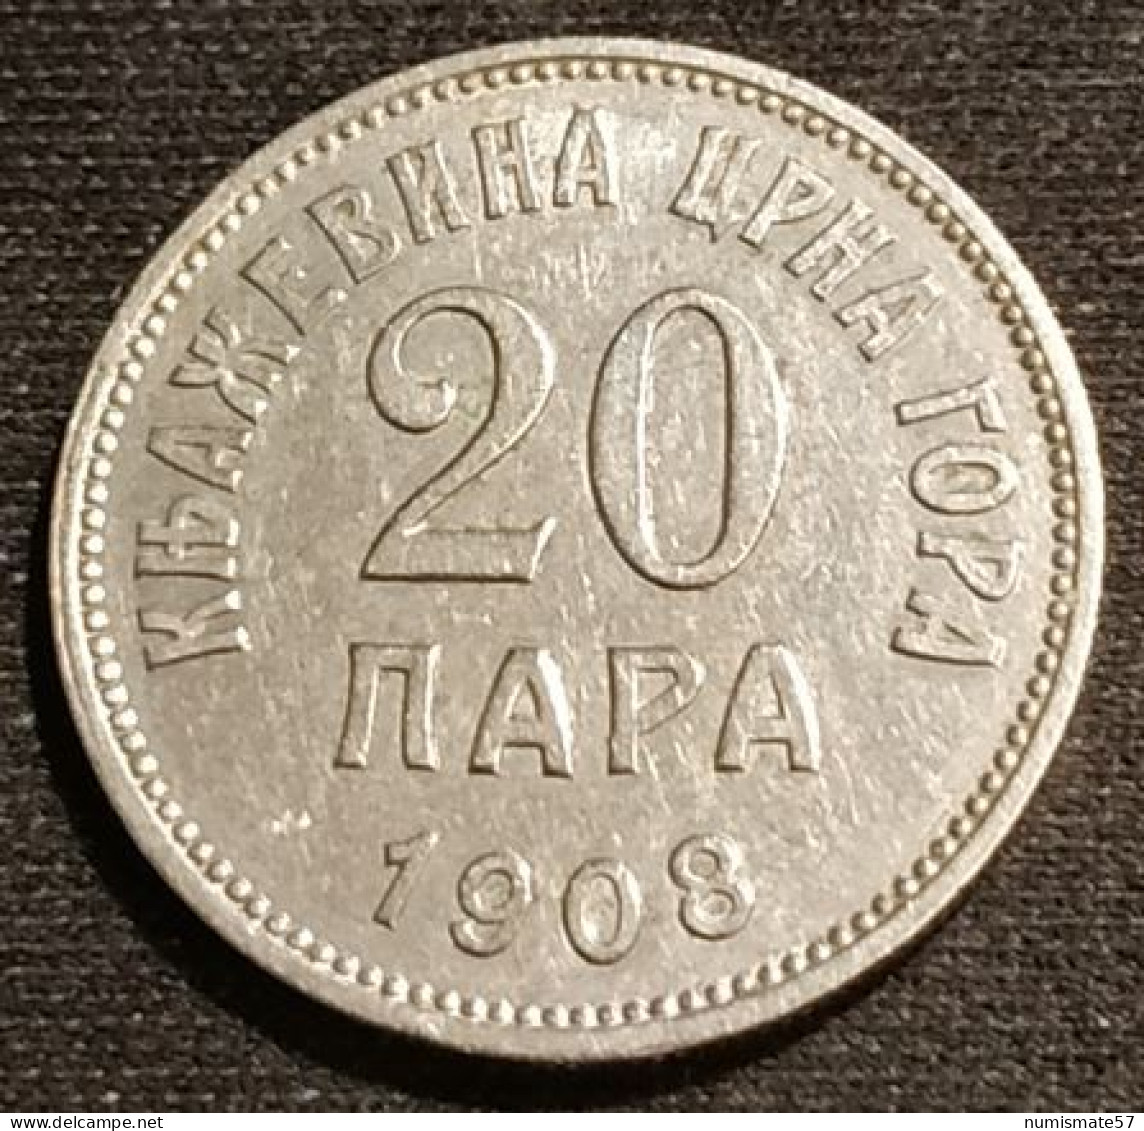 RARE - MONTENEGRO - 20 PARA 1908 - KM 4 - Yugoslavia